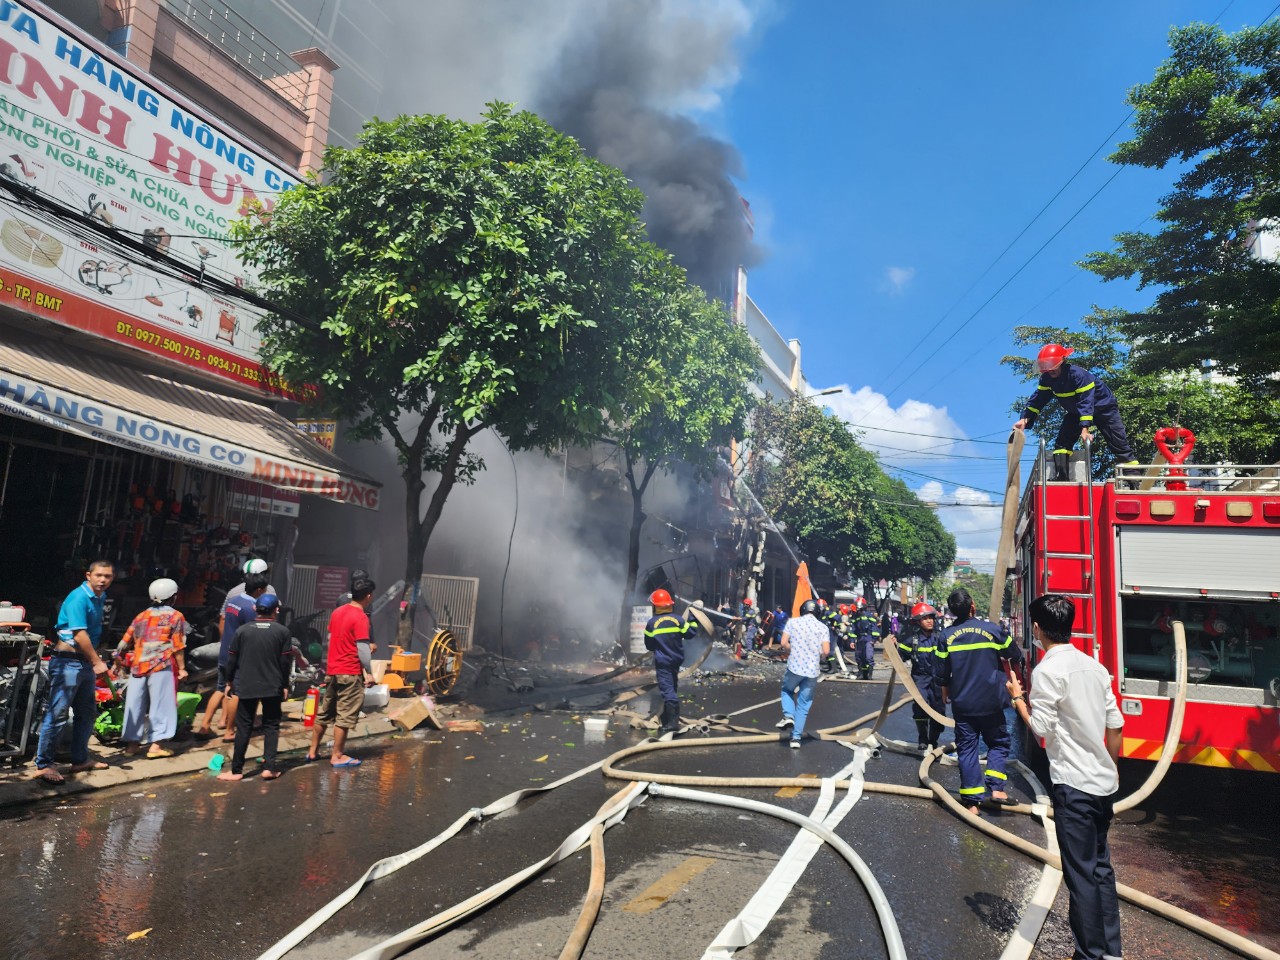 CLIP: Đang cháy lớn ở Buôn Ma Thuột, Phó Giám đốc Công an Đắk Lắk đến ngay hiện trường - Ảnh 1.